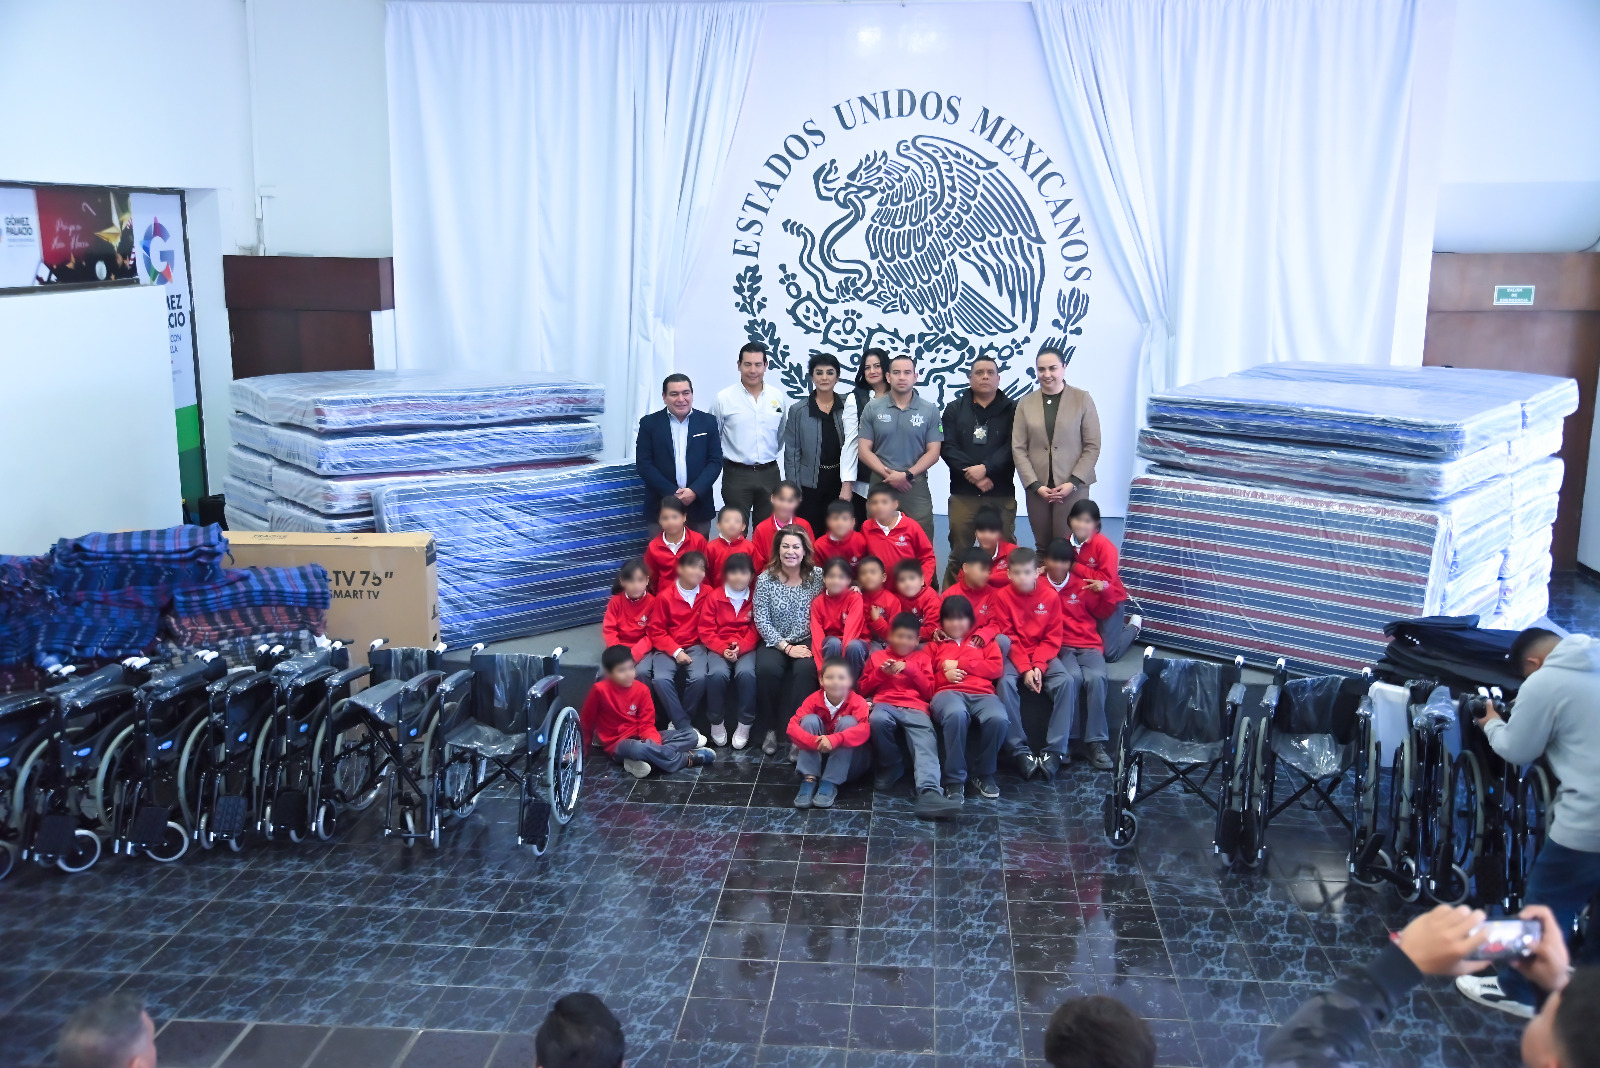 La alcaldesa culminó con una foto con los niños del internado y quienes hicieron llegar estos donativos. (CORTESÍA)